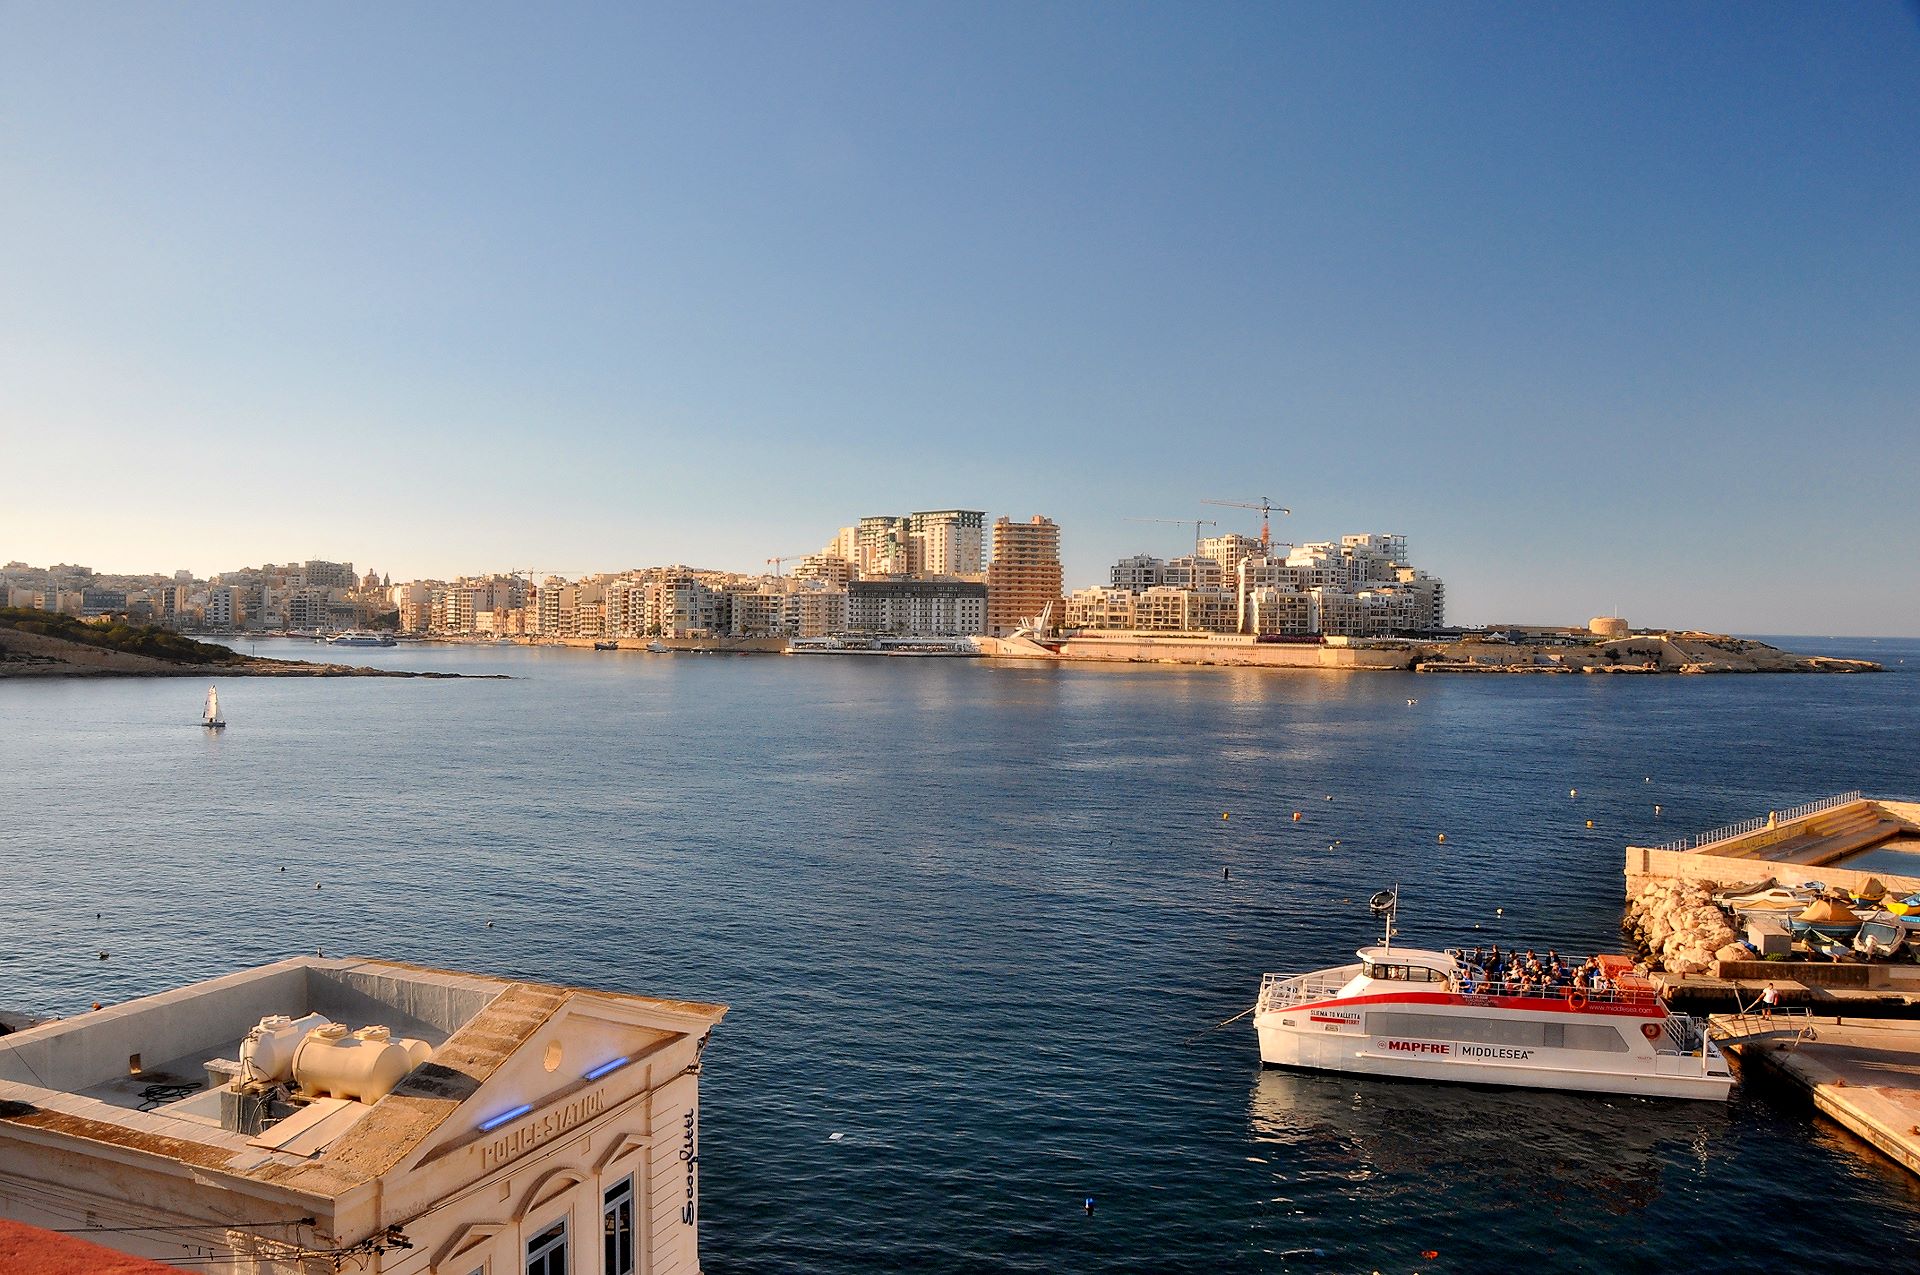 Das Fährschiff Valletta - Sliema an der Anlegestation in Valletta, über die Marsanxett-Bucht hinten ist Sliema